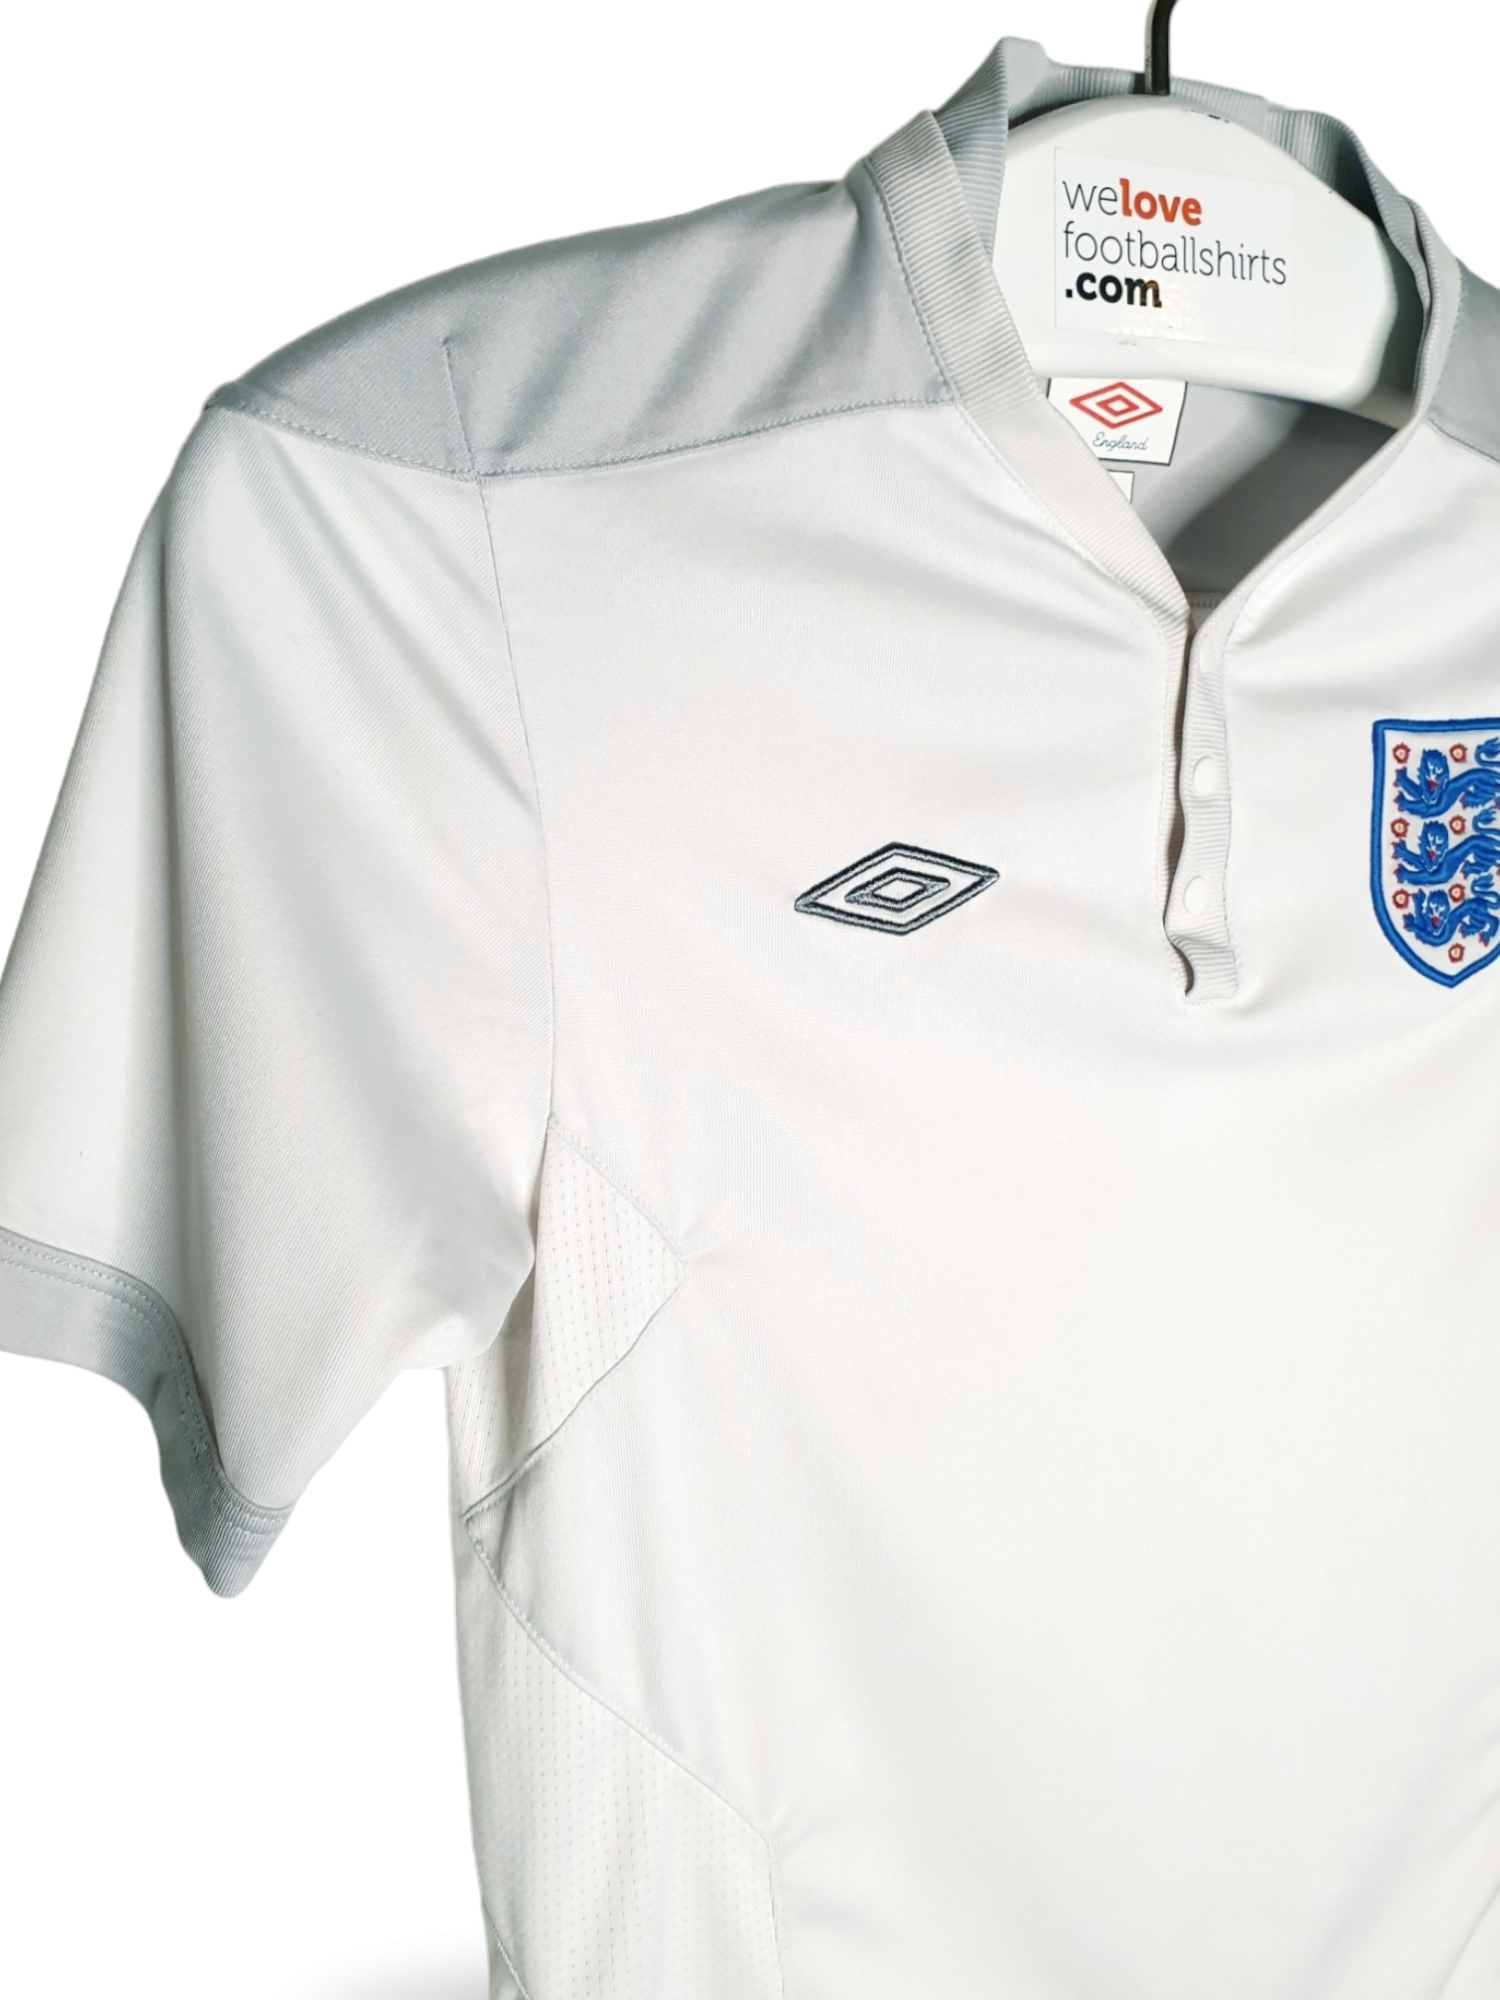 Umbro Original Umbro football shirt England